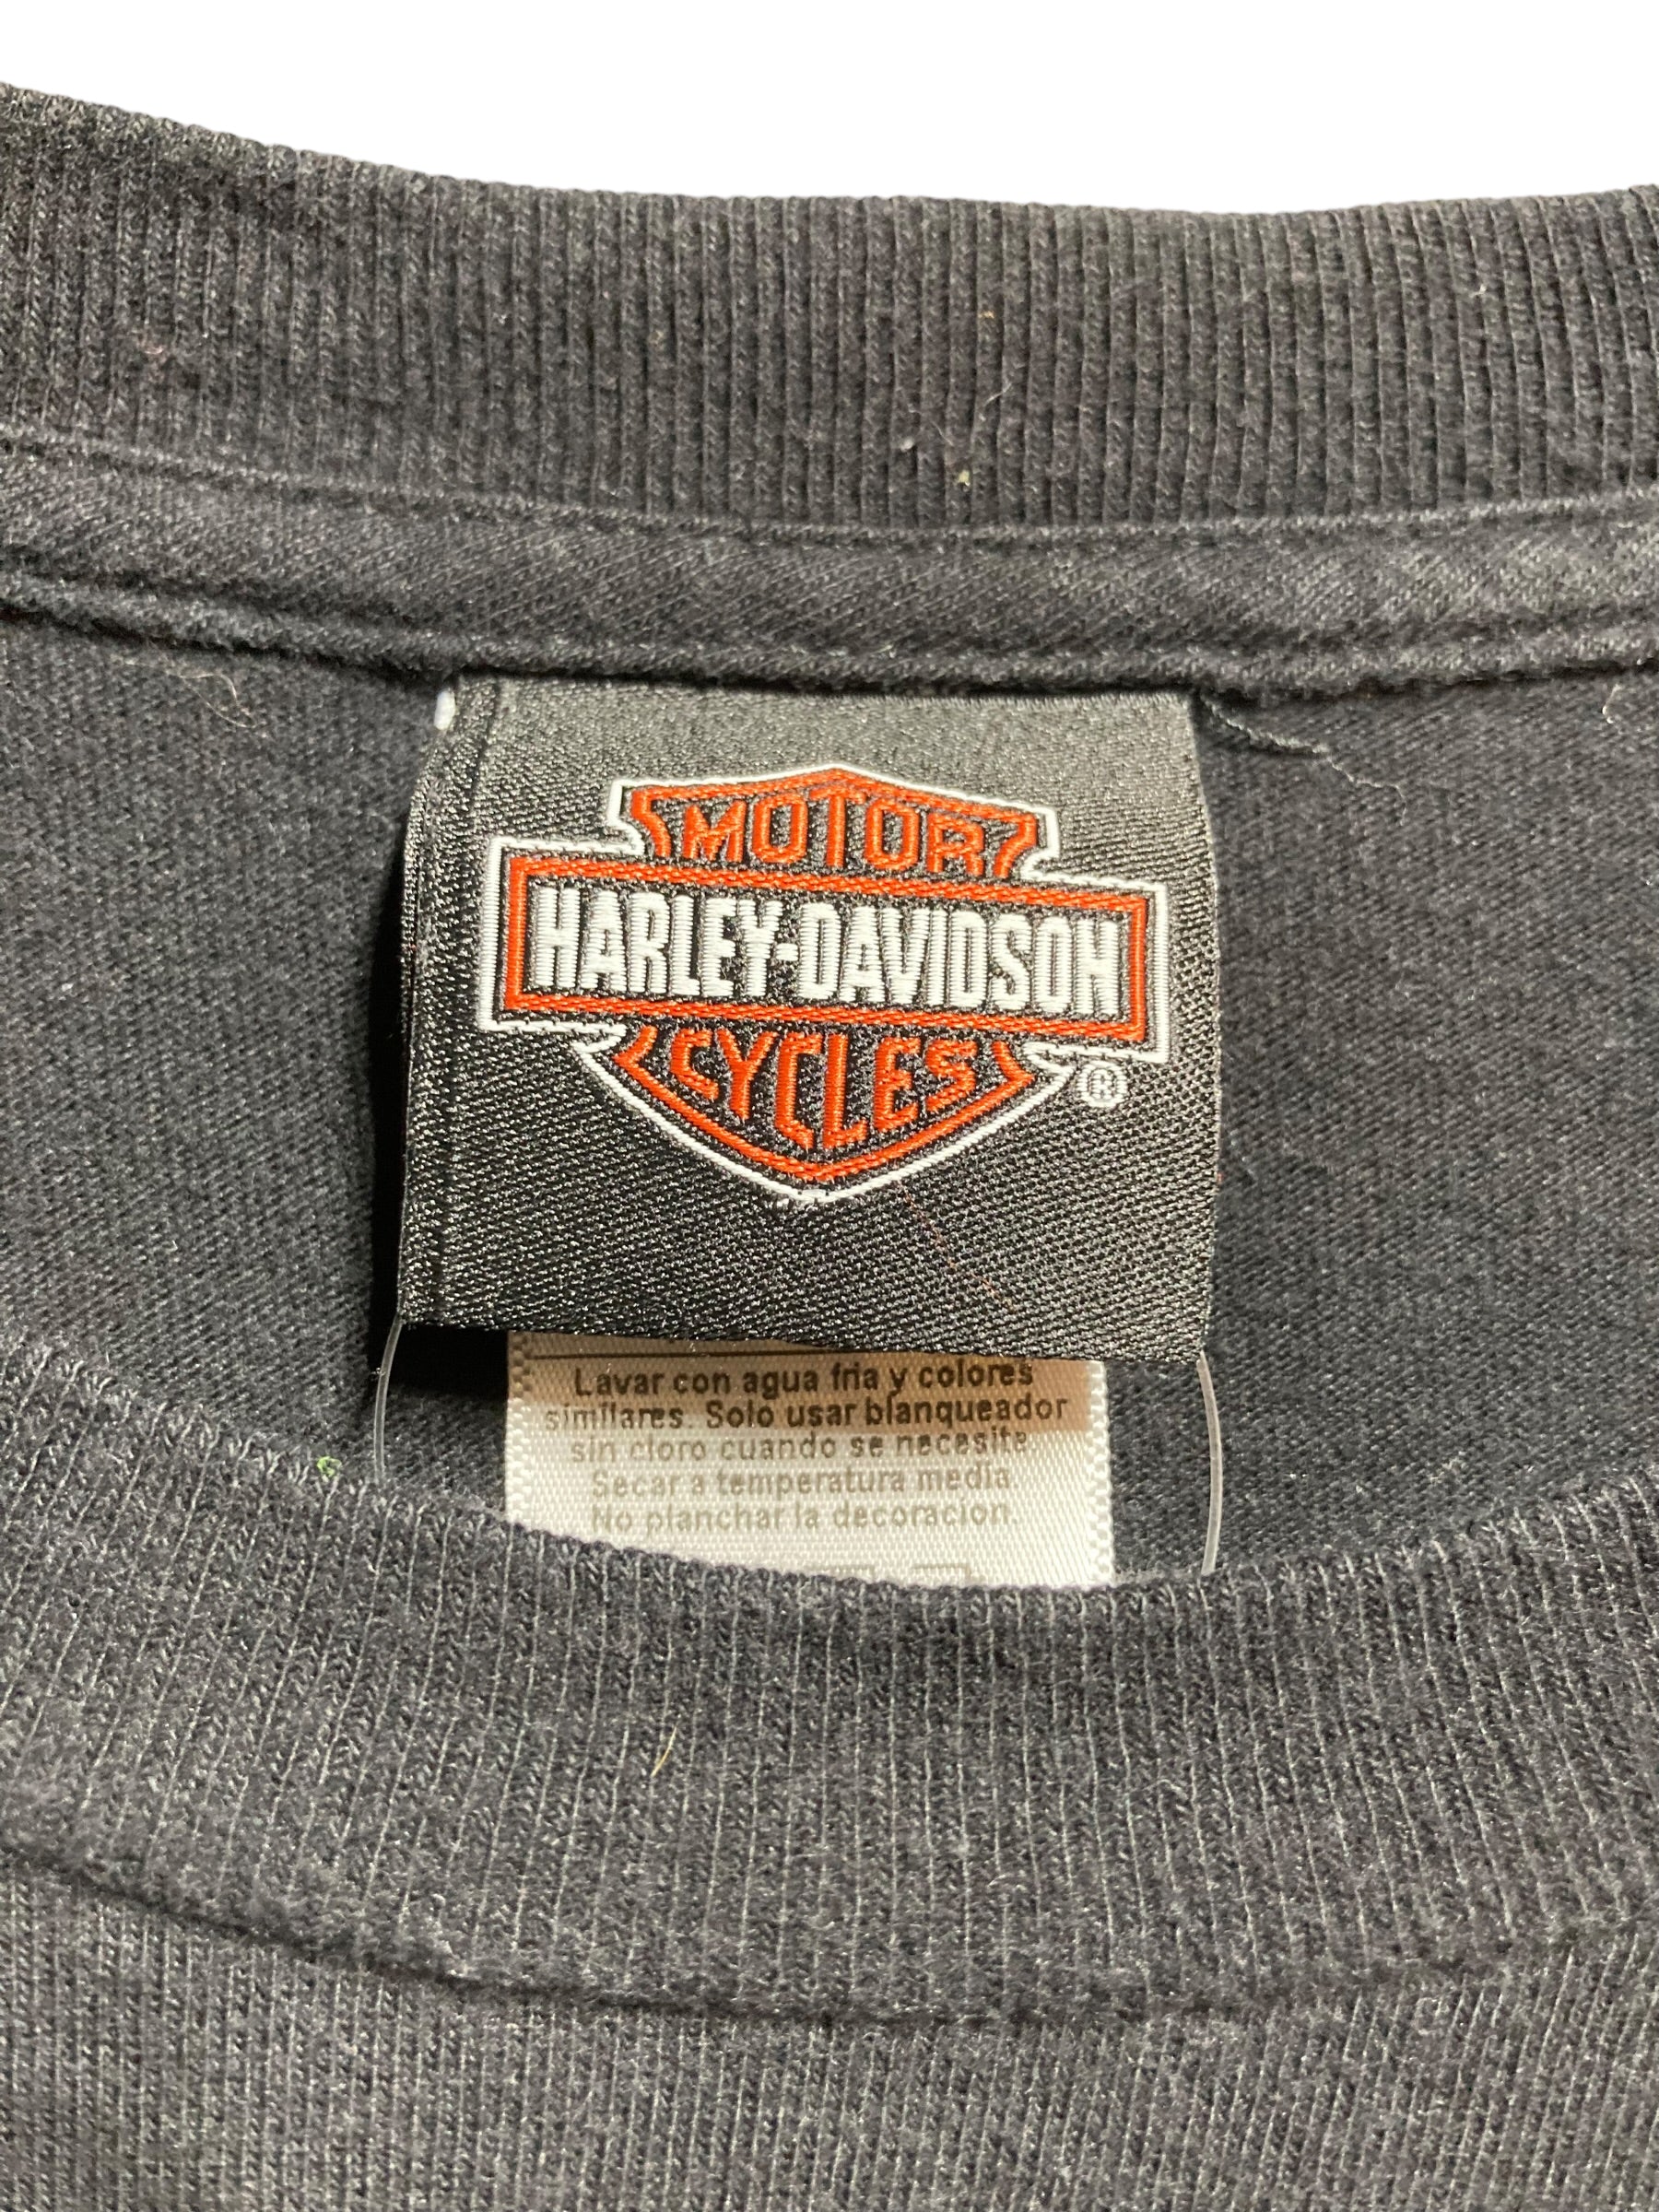 ハーレーダビッドソン Harley-Davidson バックロゴ 半袖 ワークシャツ メンズL /eaa351176465cm袖丈